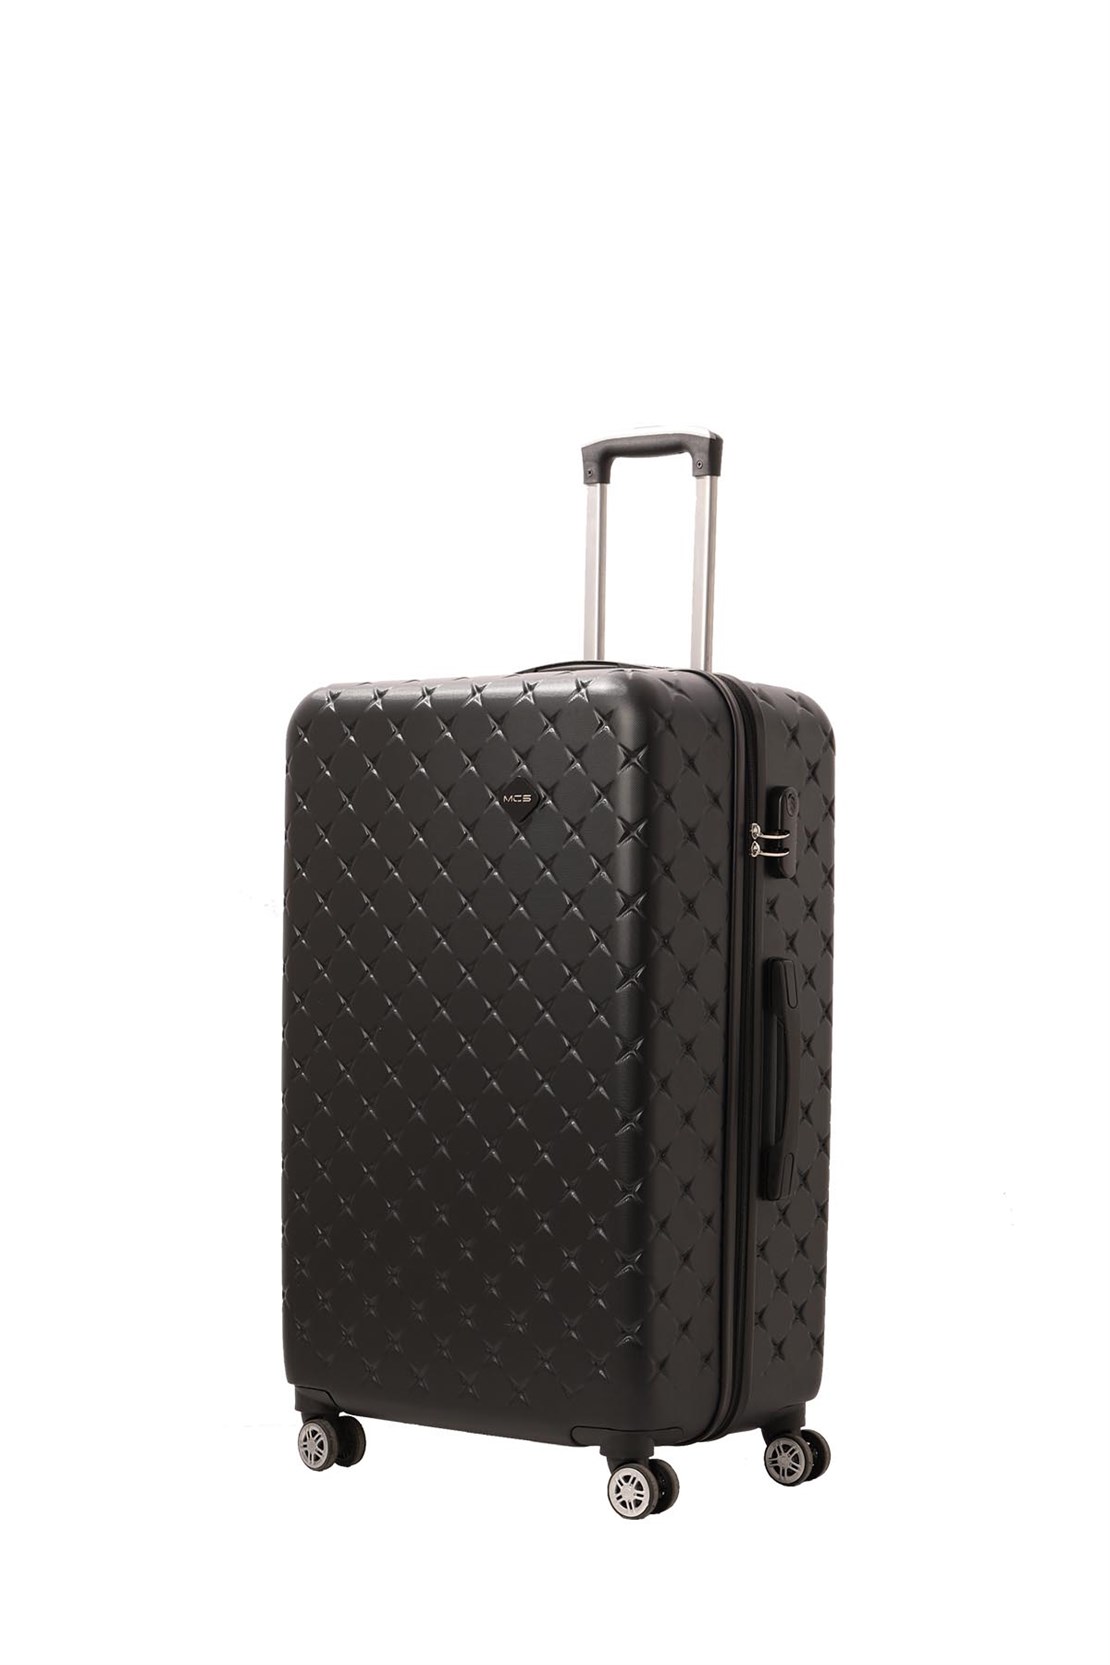 Малый чемодан для ручной клади из АБС Поликарбонат MCS v361 S Black - 3